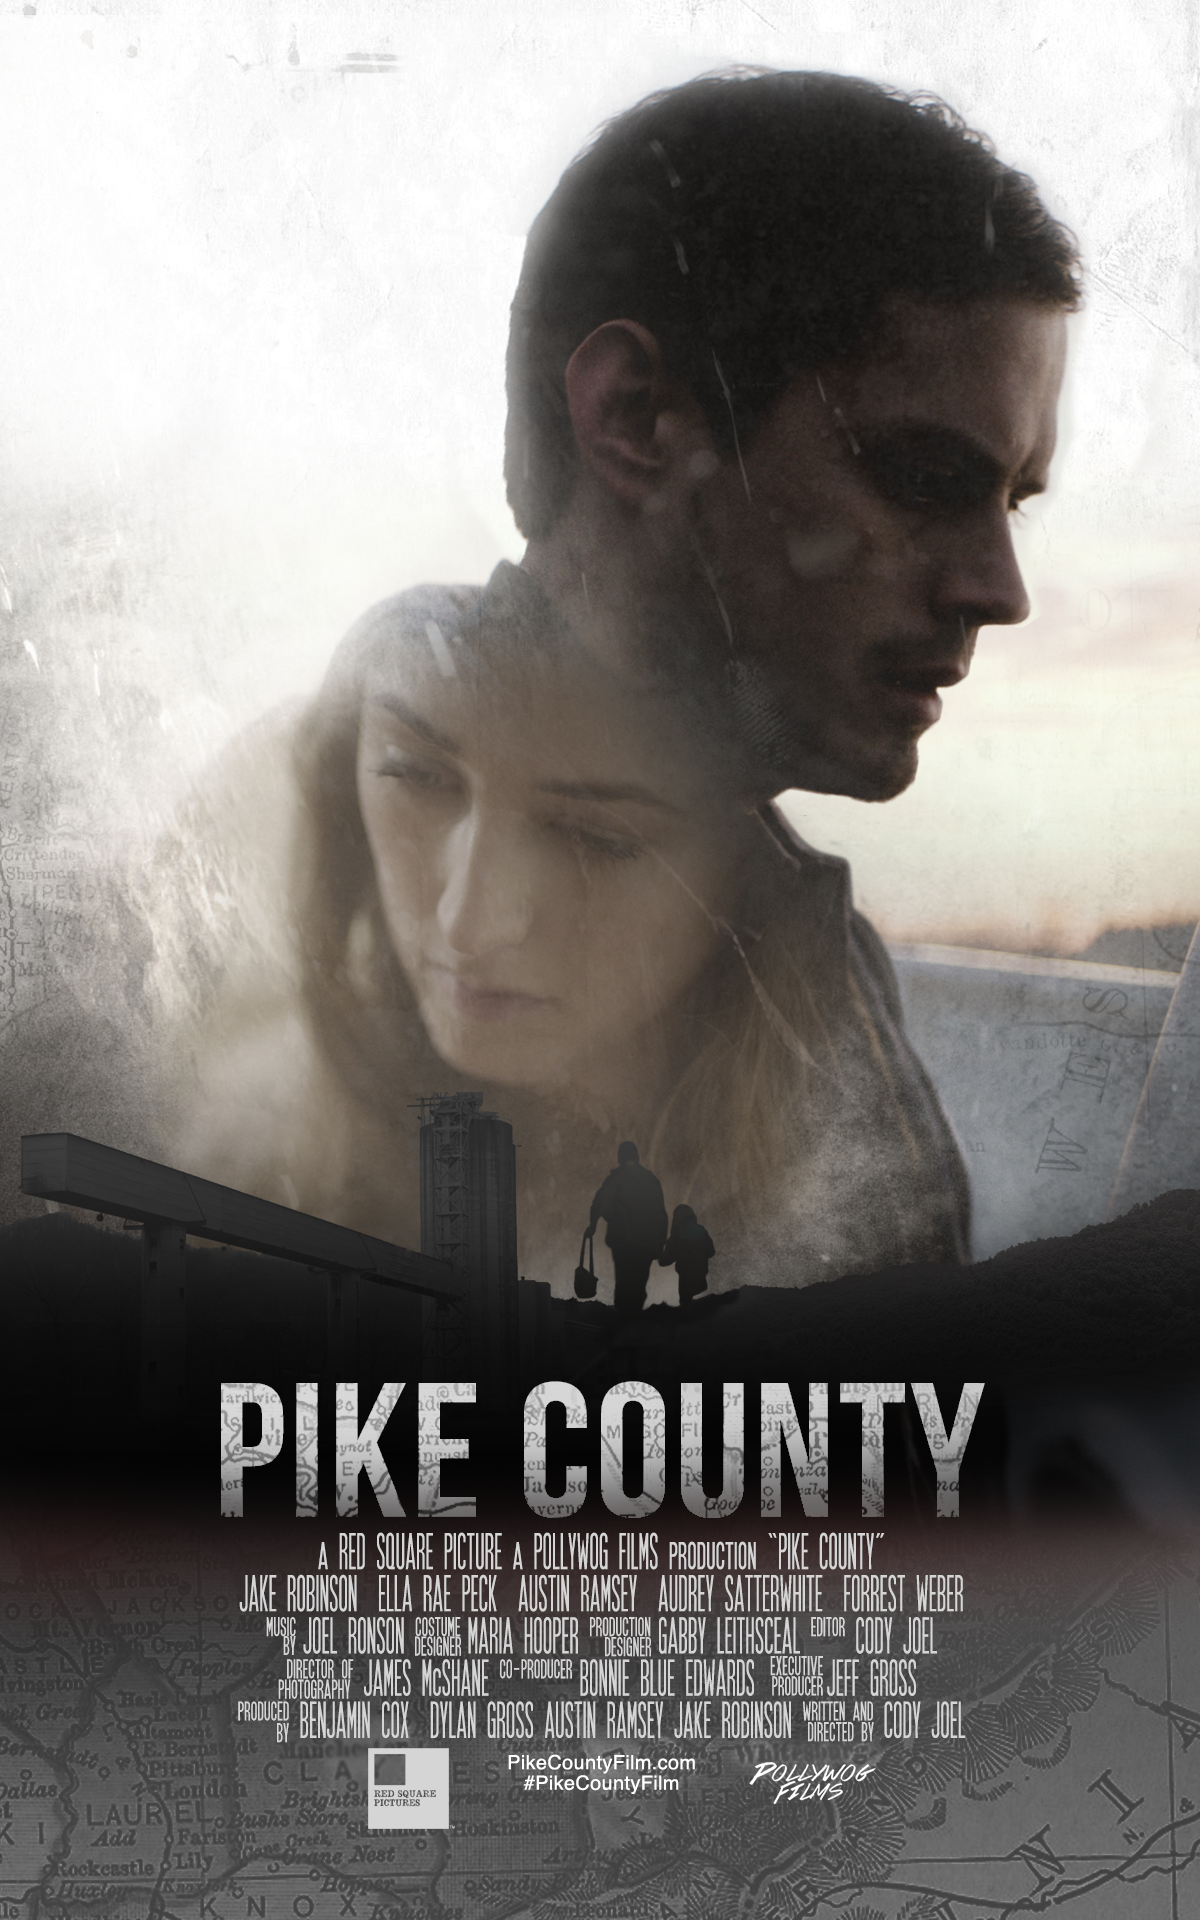 Pike County